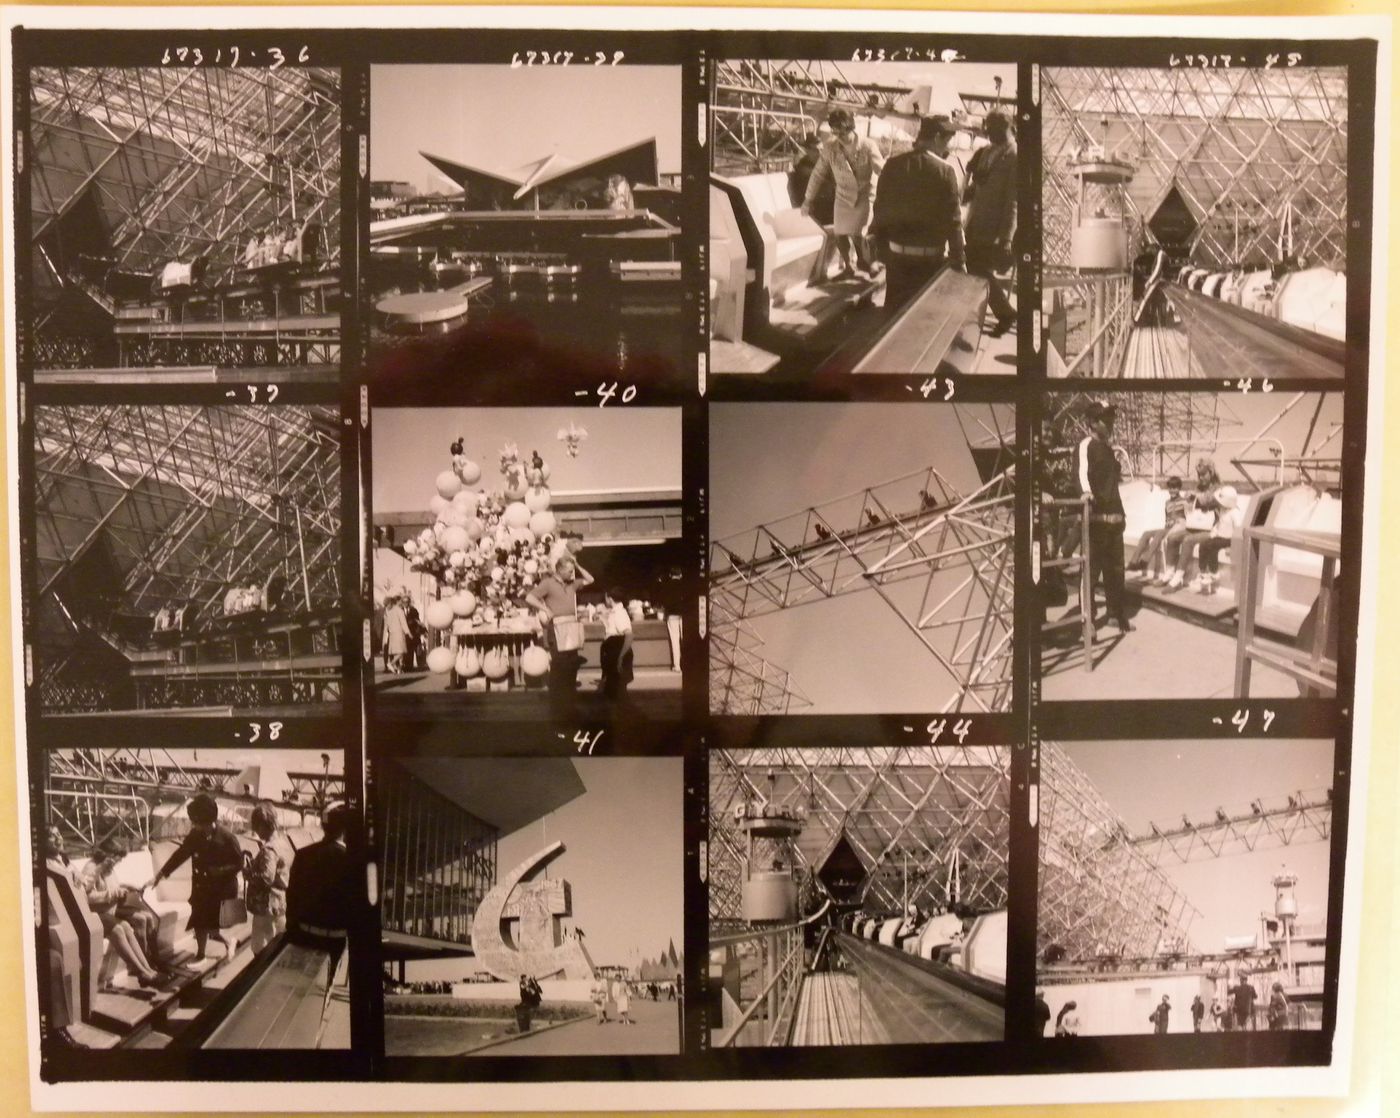 Contact sheet with photographs of the Gyrotron principally, Expo 67, Montréal, Québec